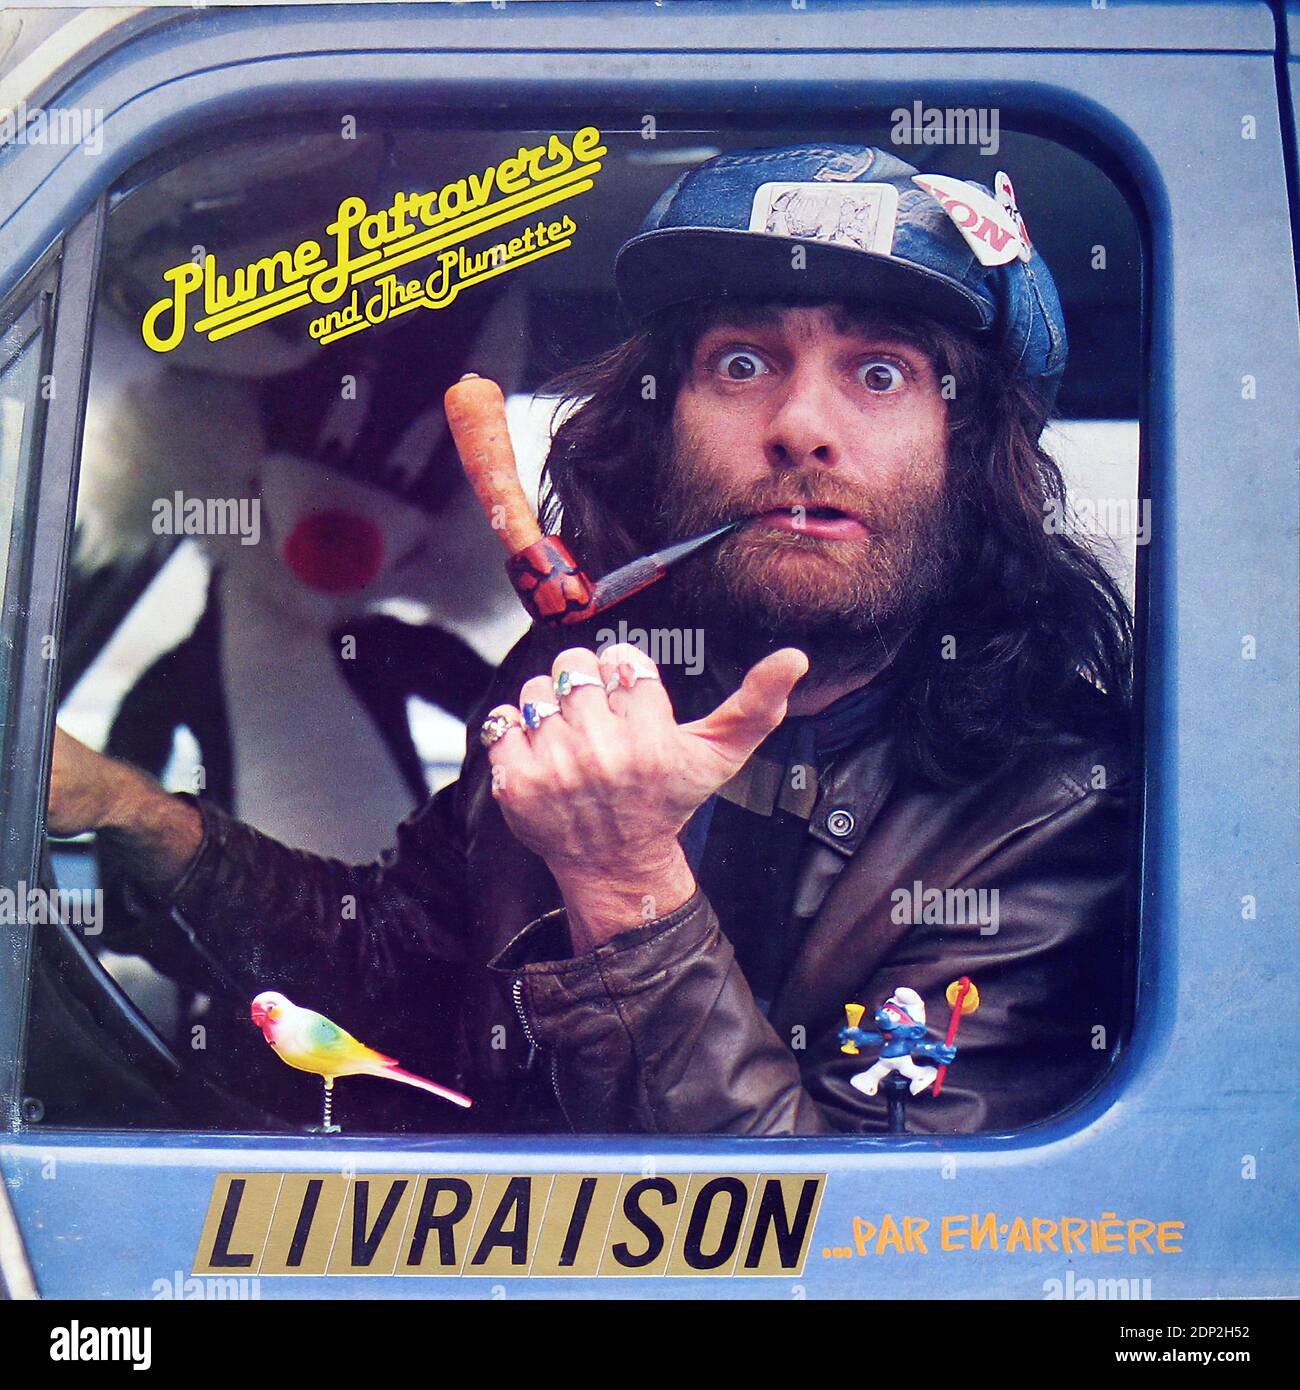 Plume Latraverse Livraison par en arriere - Vintage Vinyl Record Abdeckung Stockfoto